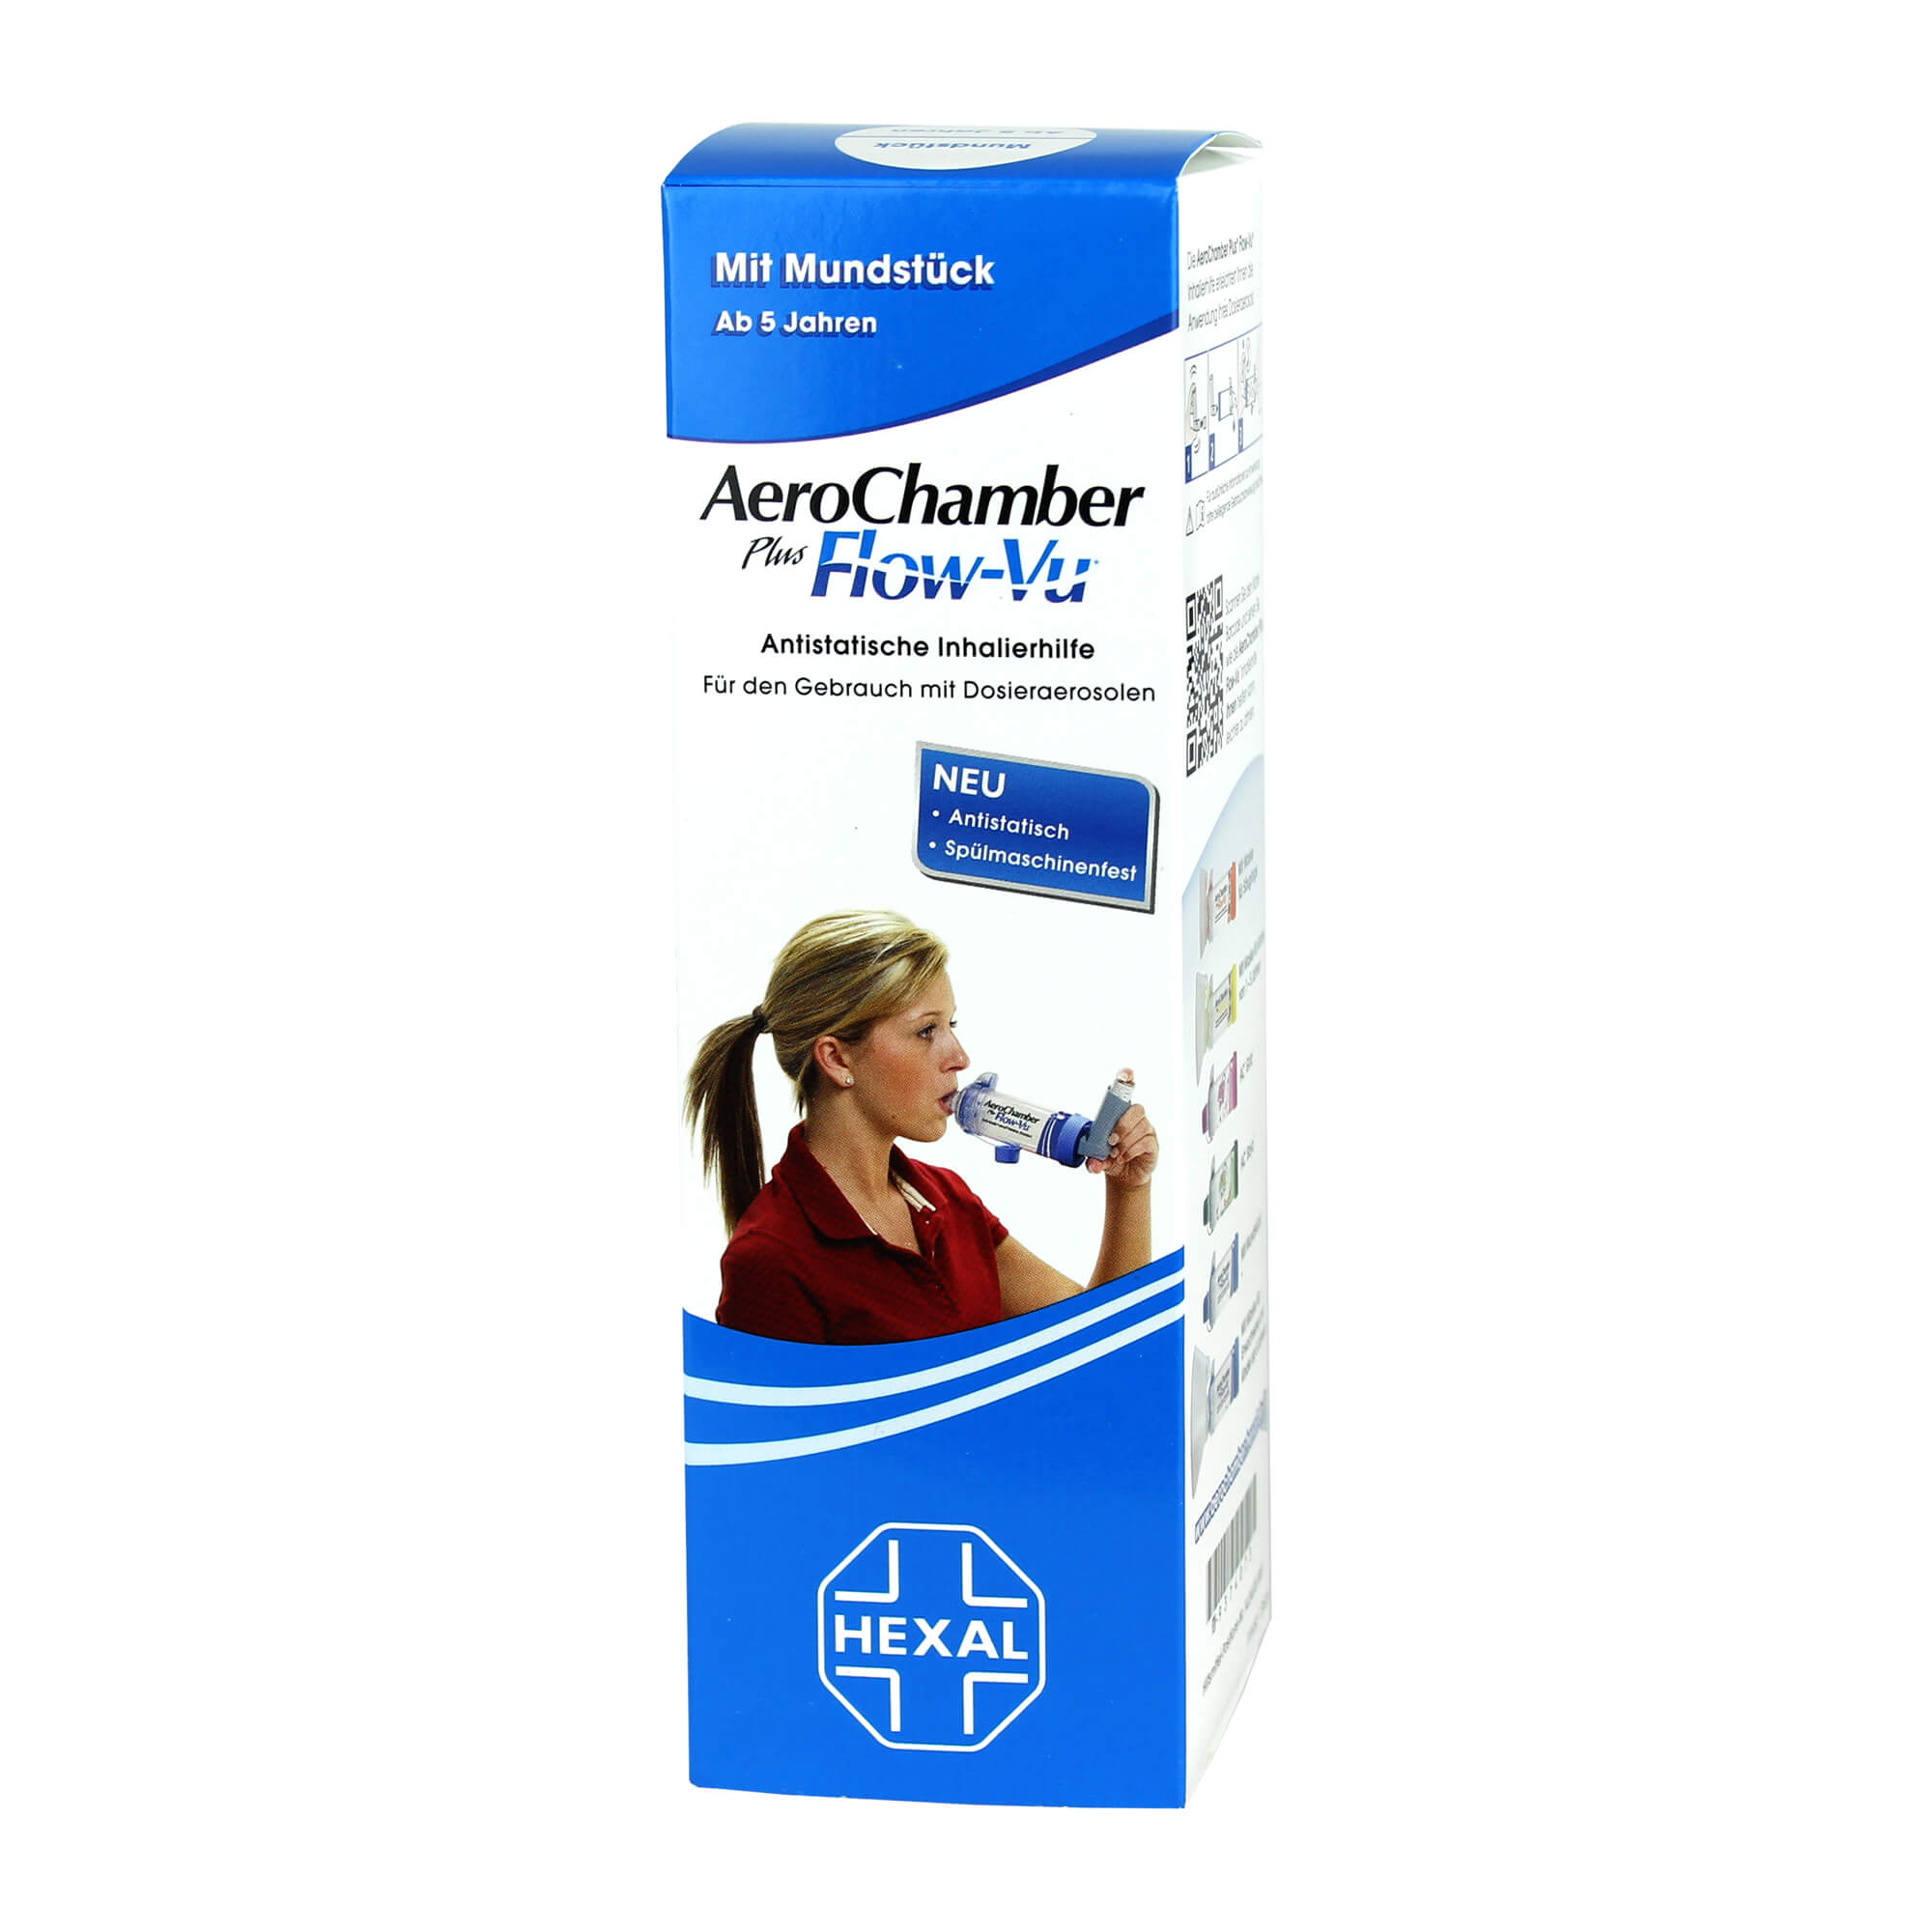 Antistatische Inhalierhilfe mit Mundstück für Erwachsene und Kinder ab 5 Jahren.